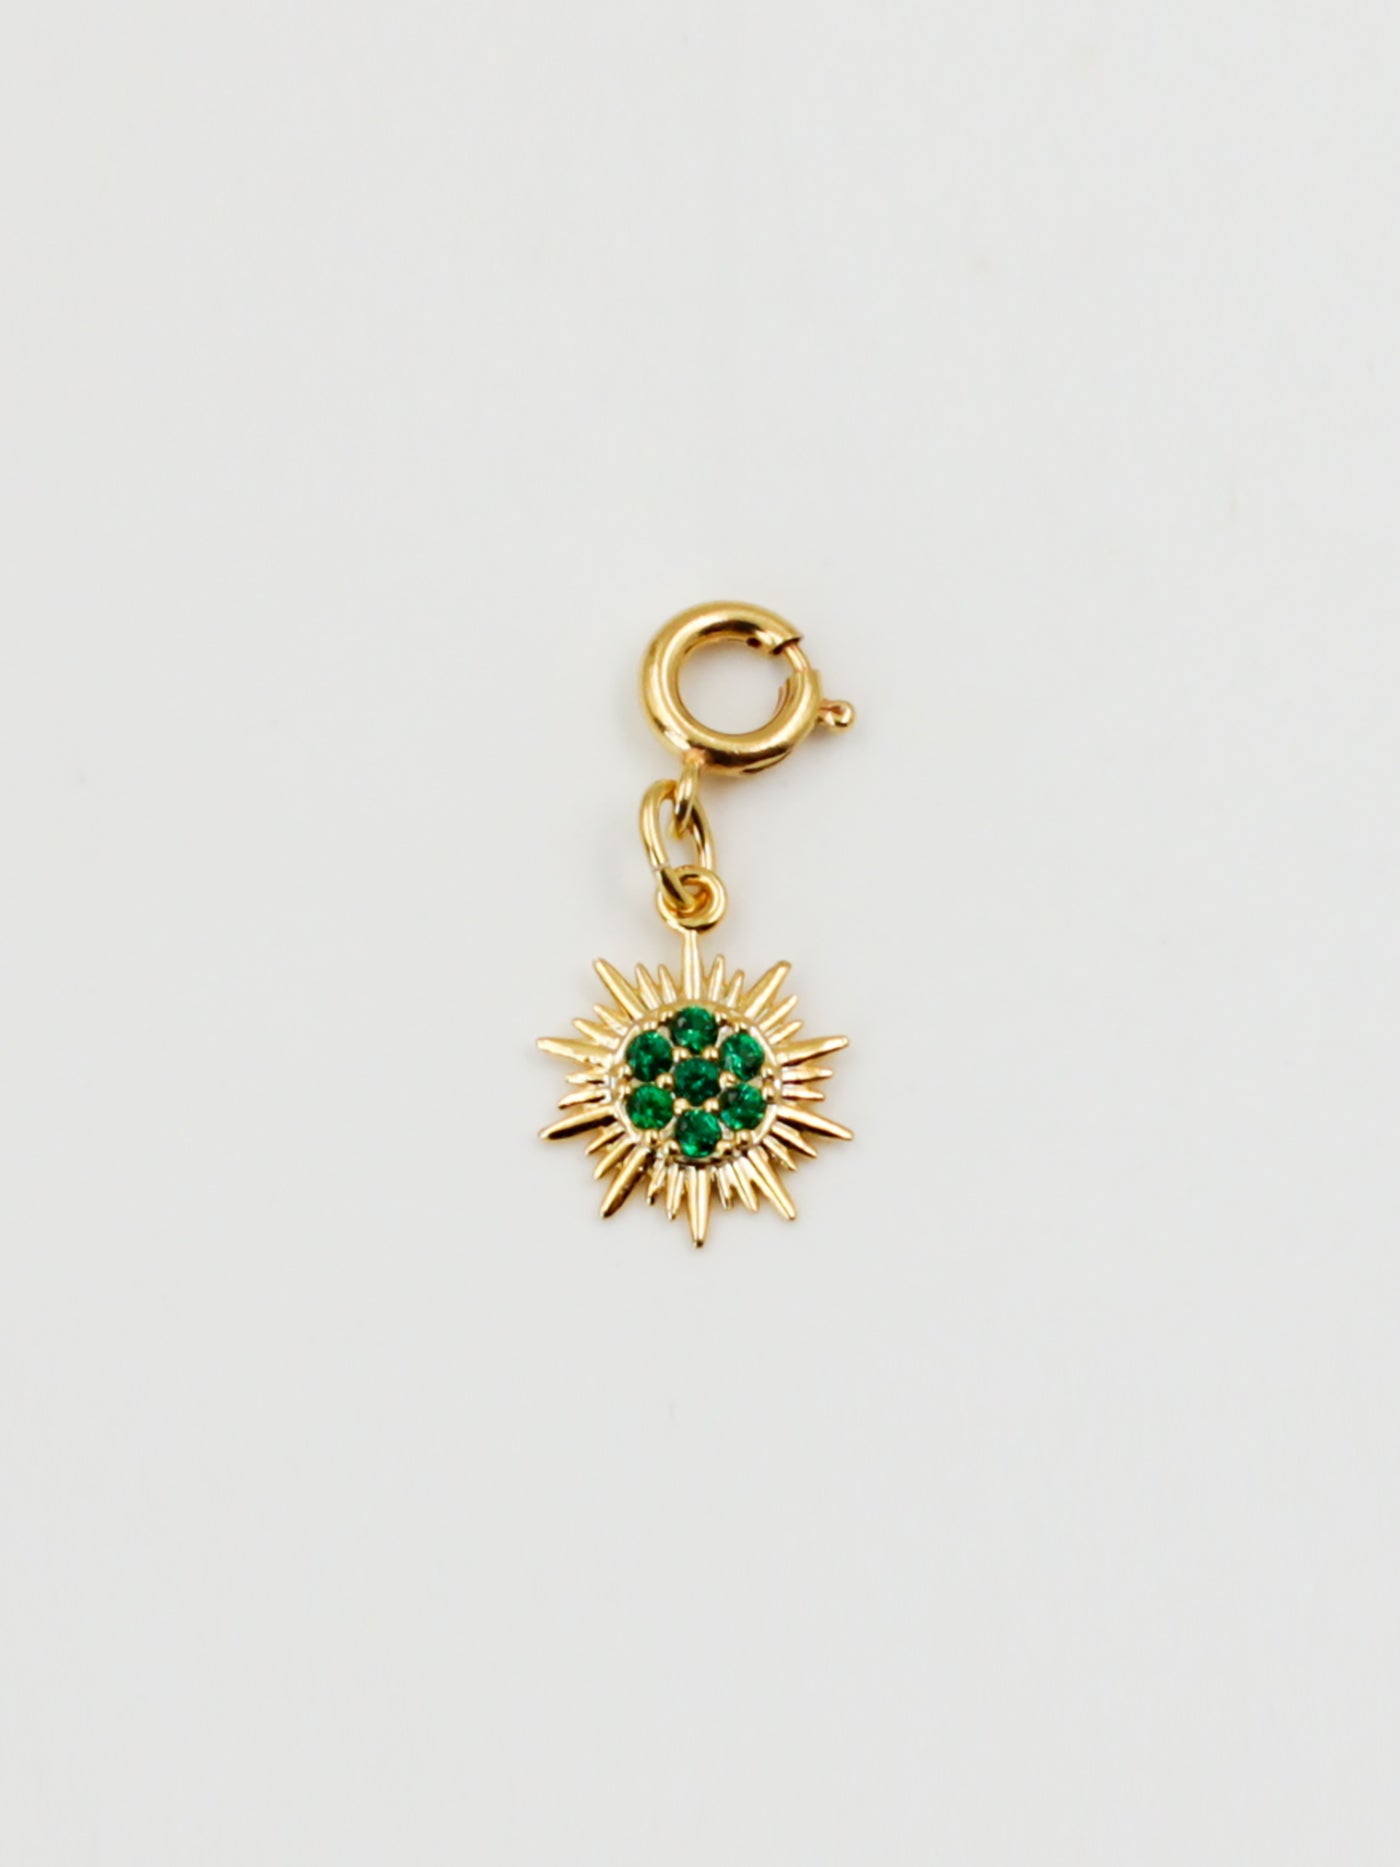 Bijoux dorés - Charm soleil vert de la gamme GRIGRI - L'Atelier des Dames